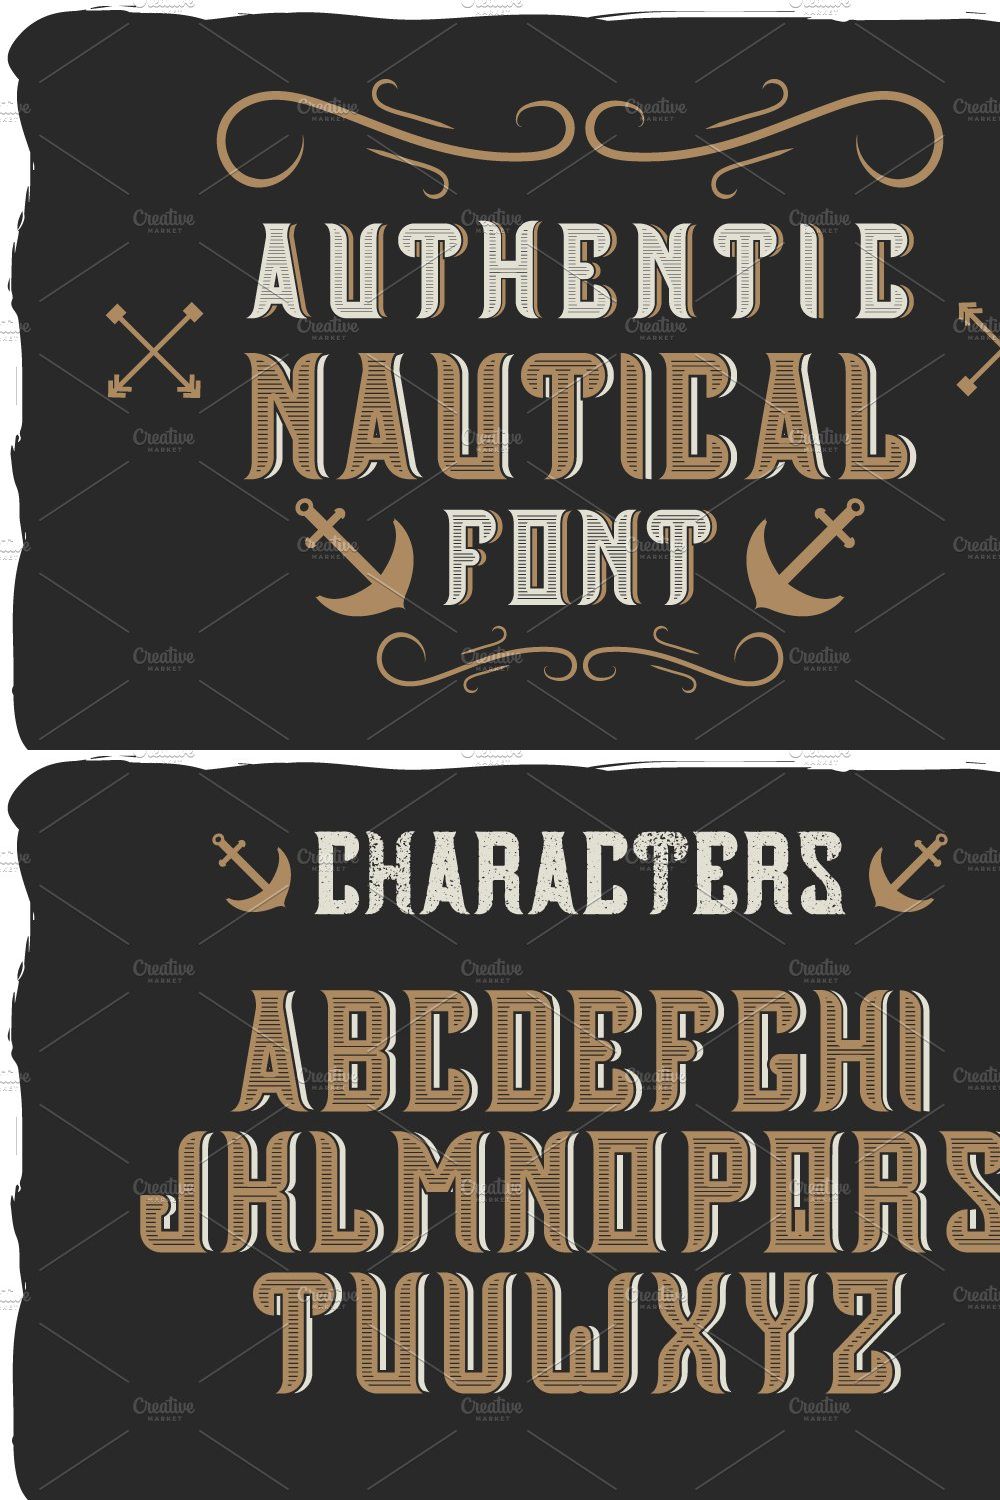 Nautical font + bonus label pinterest preview image.